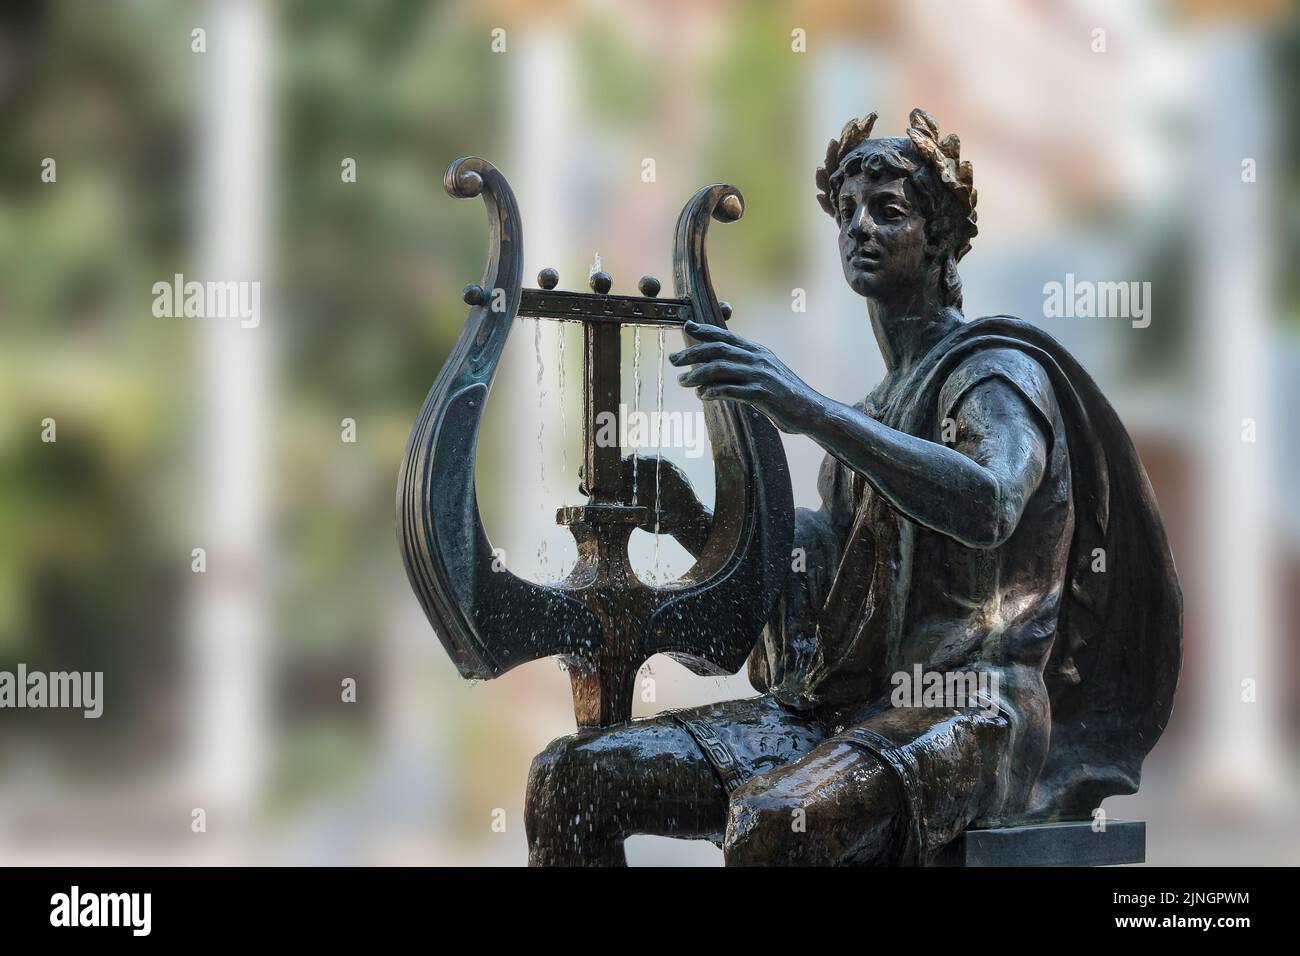 Moscou, Russie, Apollon ancien dieu de poésie et statue de métal de musique sur fond de plaine Banque D'Images